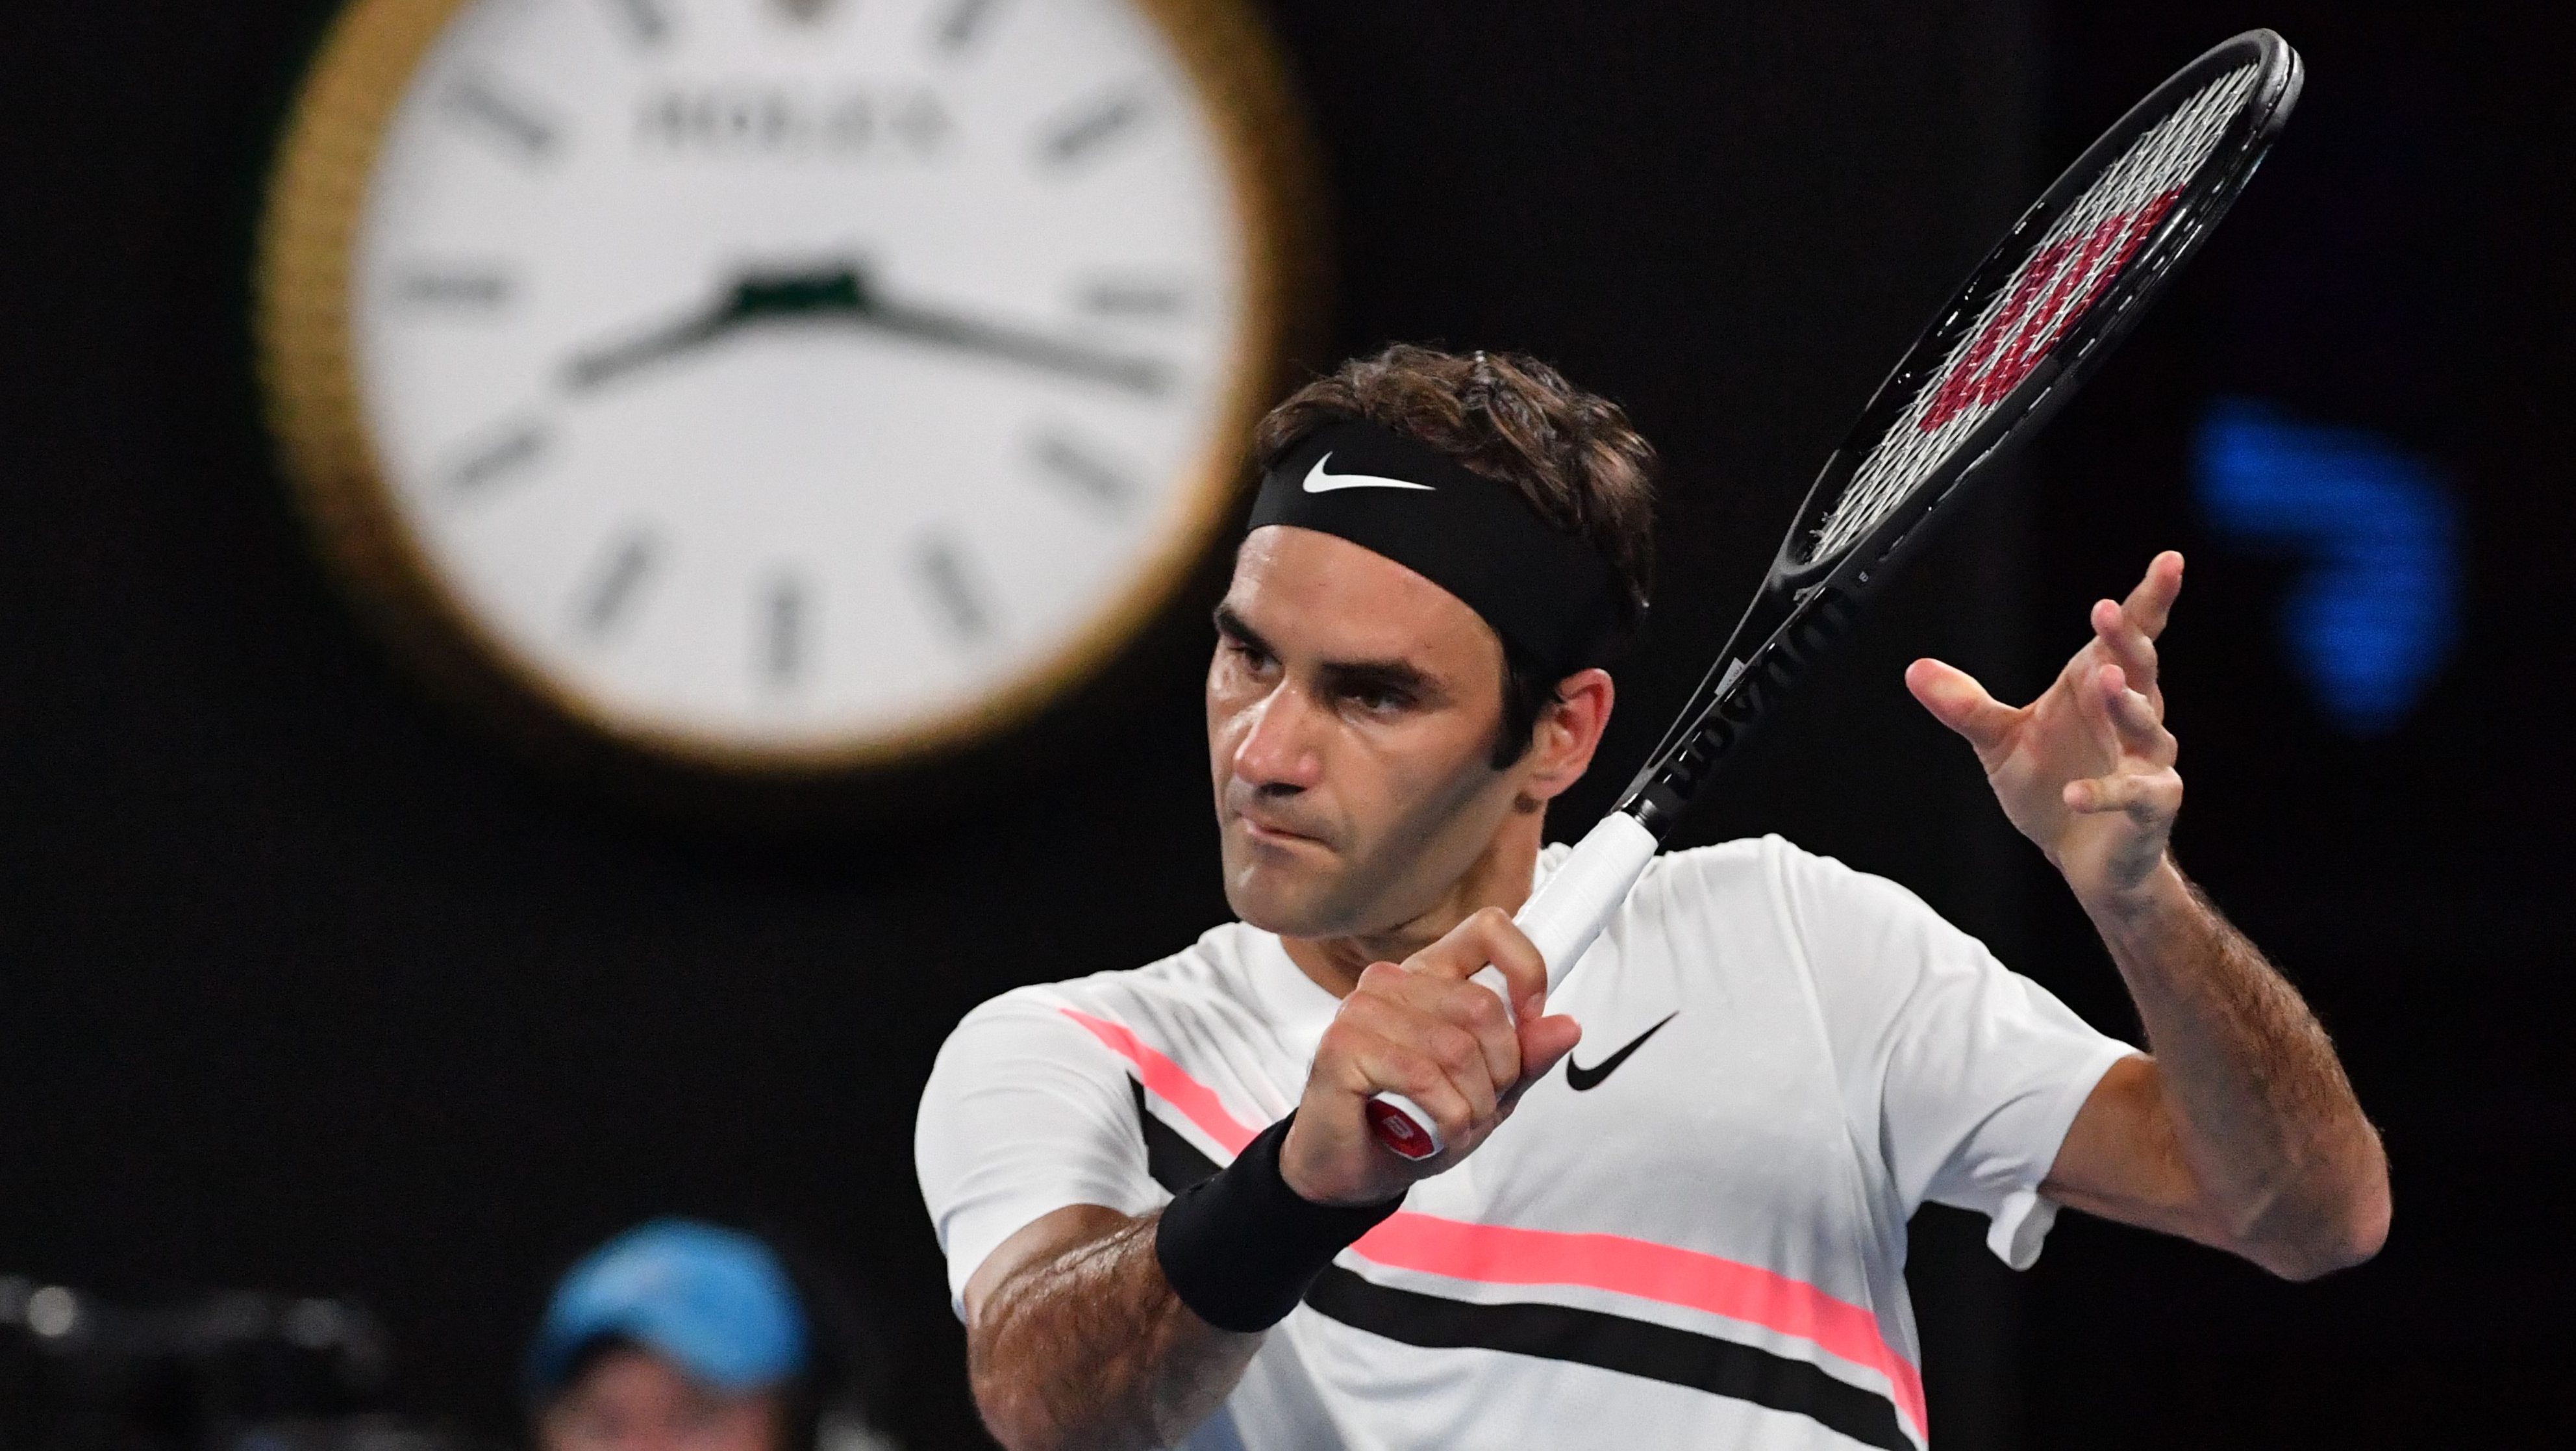 How to Watch Federer vs Cilic Australian Open Final 2018 Heavy